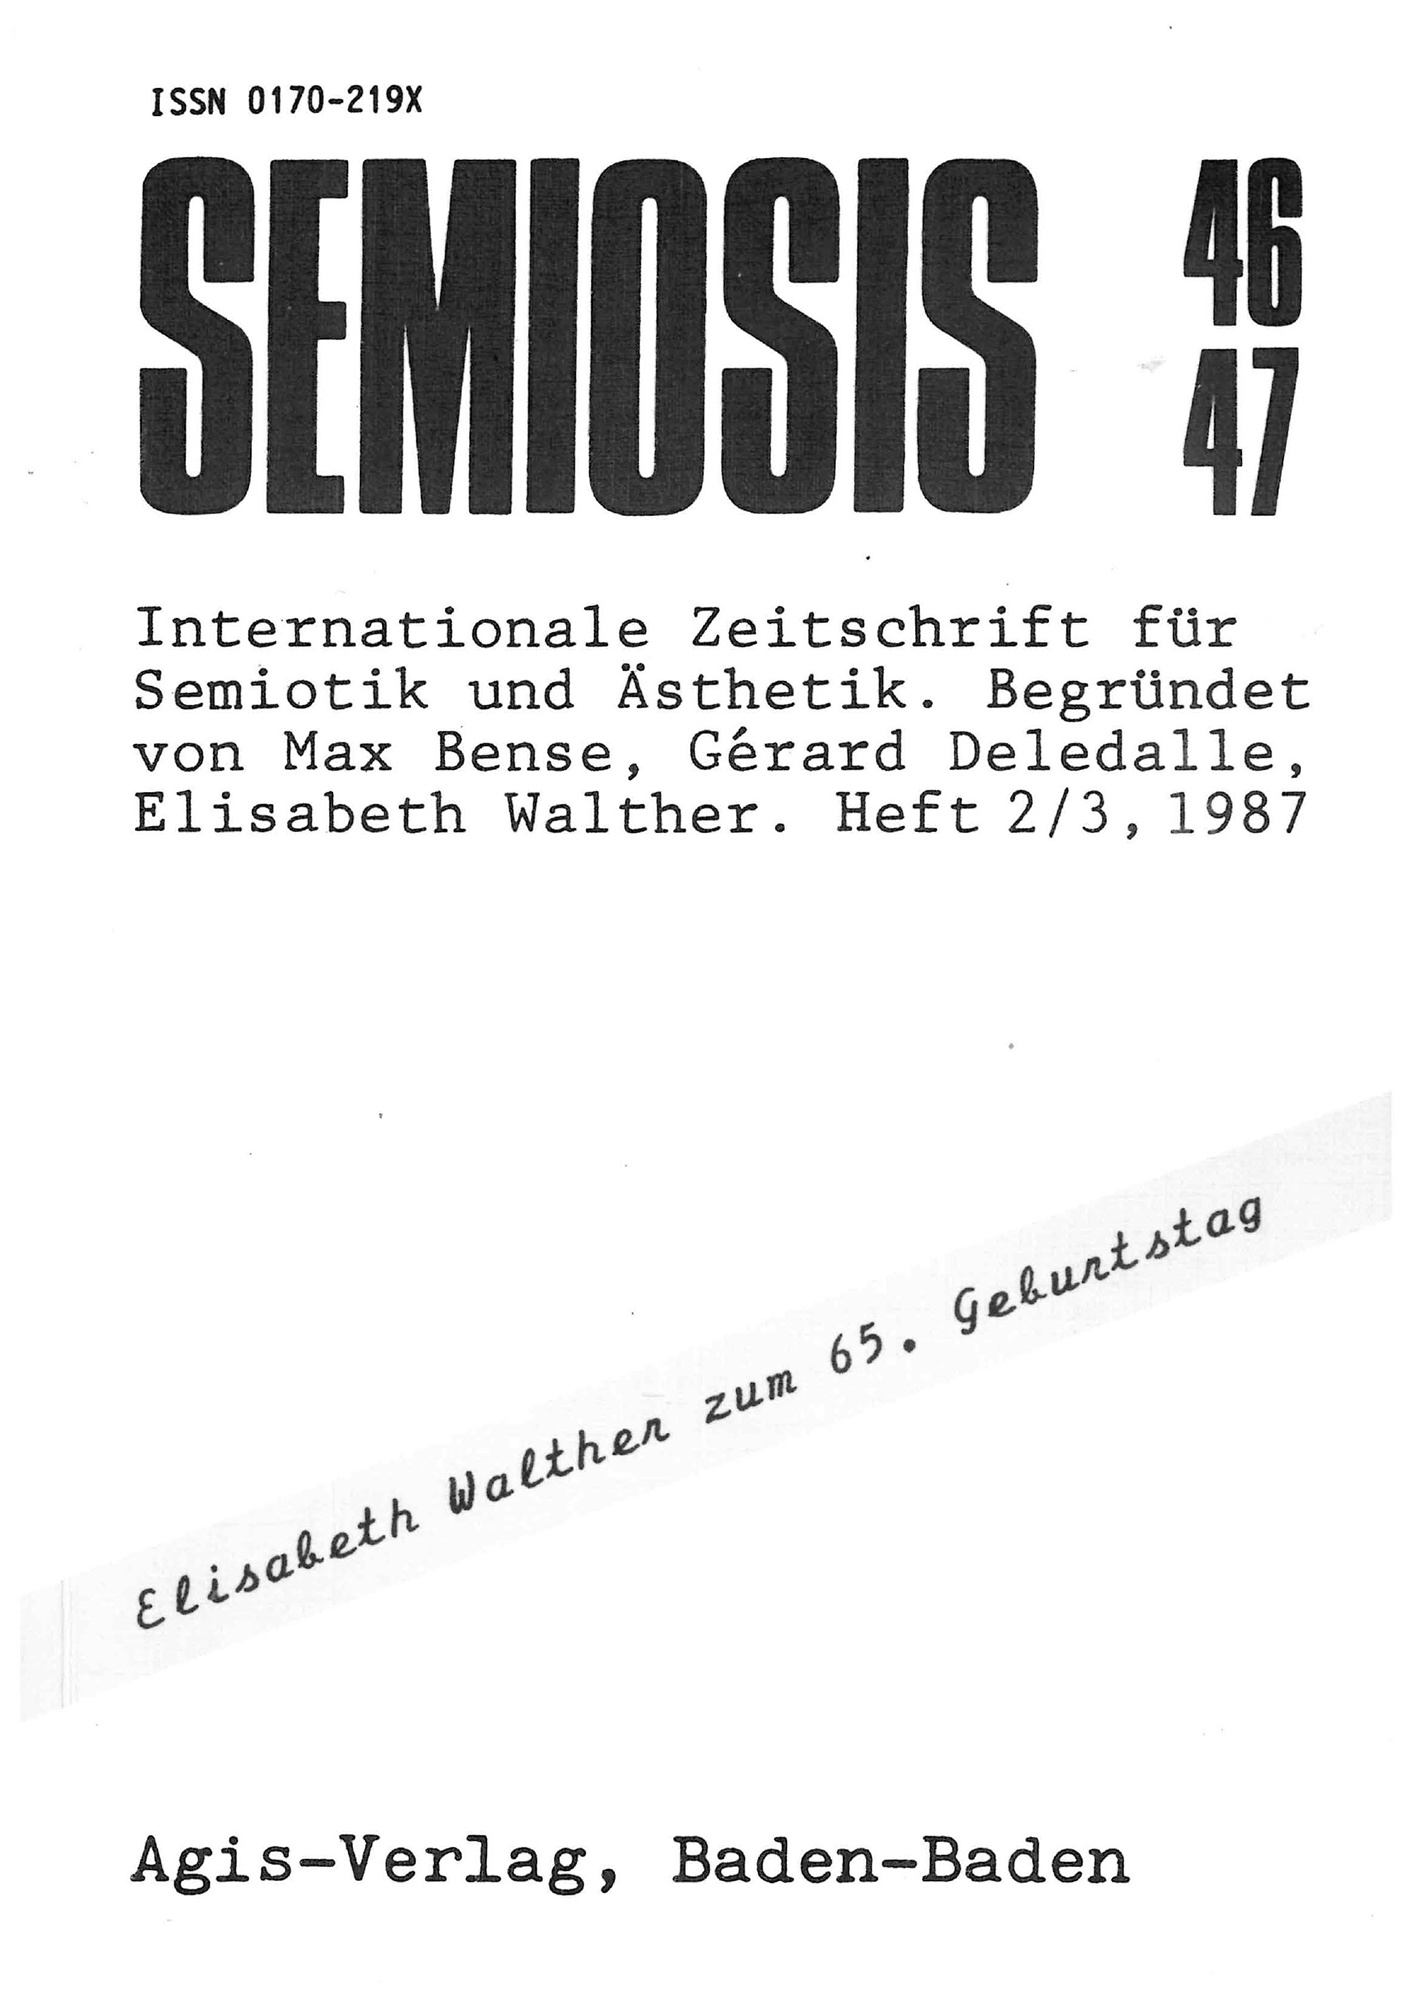 Cover der Zeitschrift »Semiosis«: schwarze Schrift auf weißem Grund